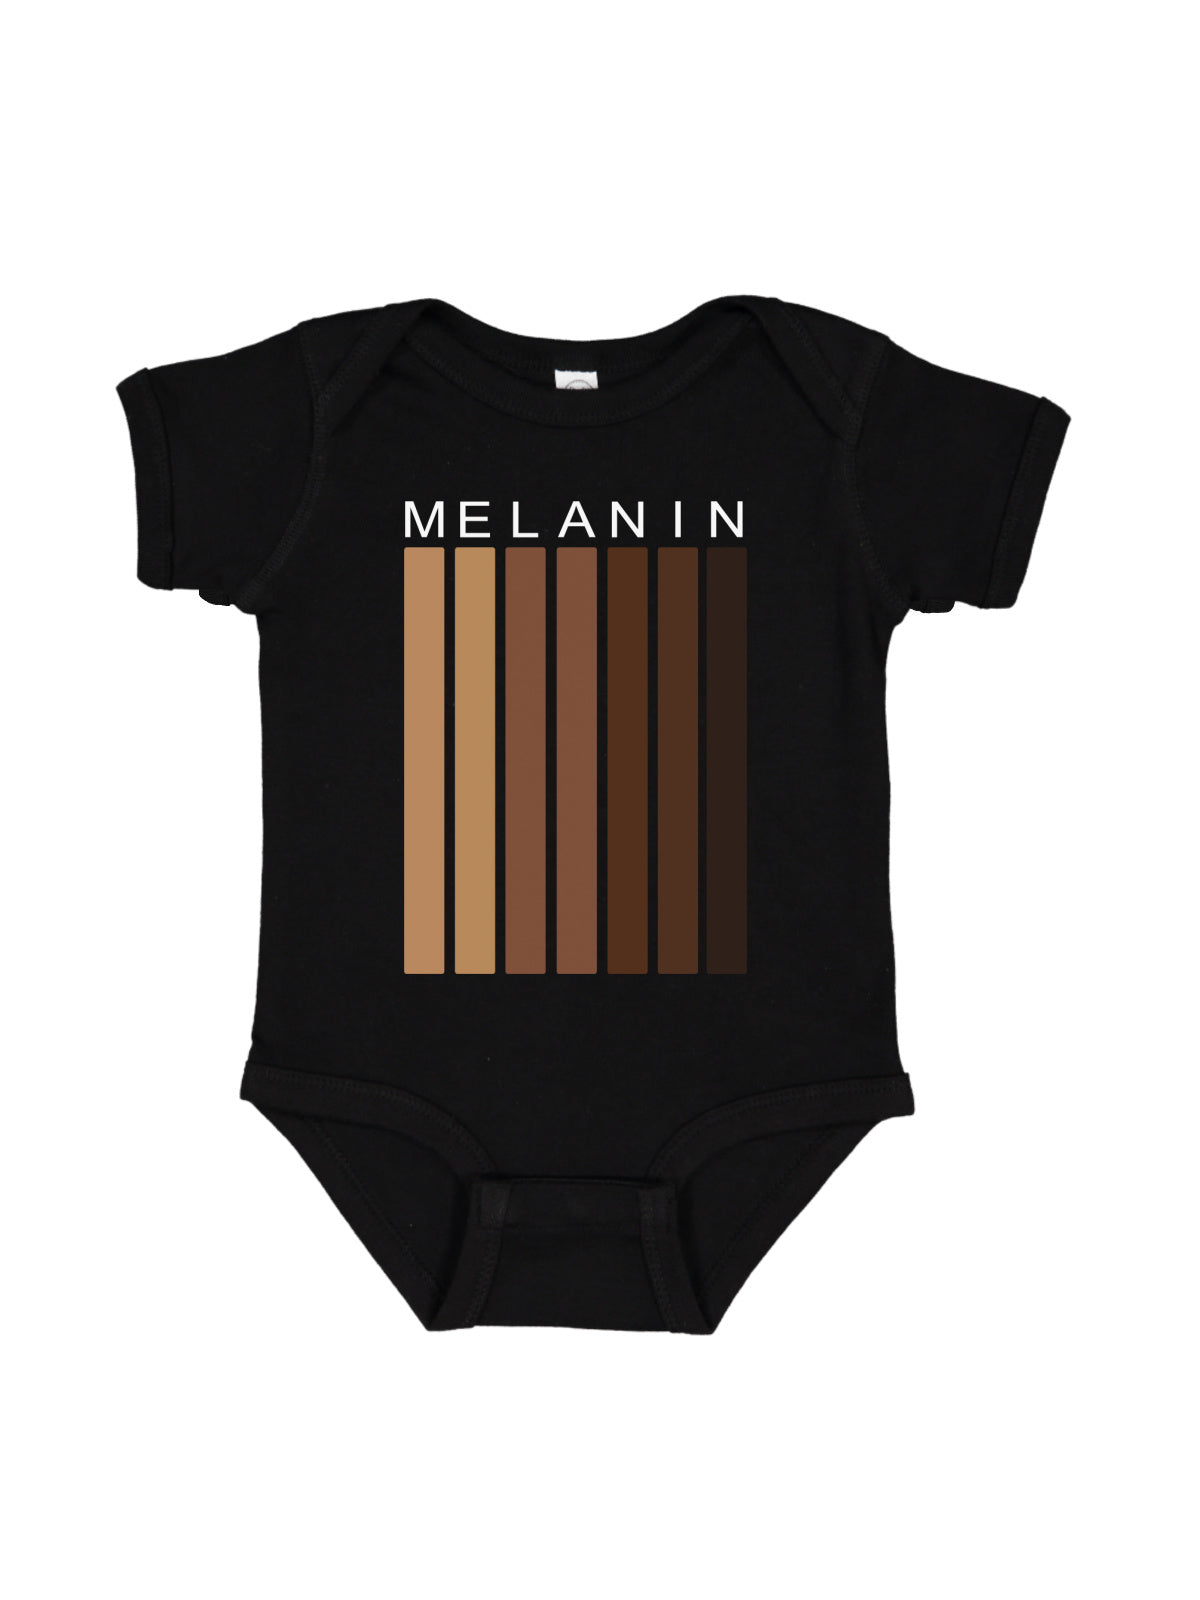 Shades of Melanin Black History Baby Bodysuit